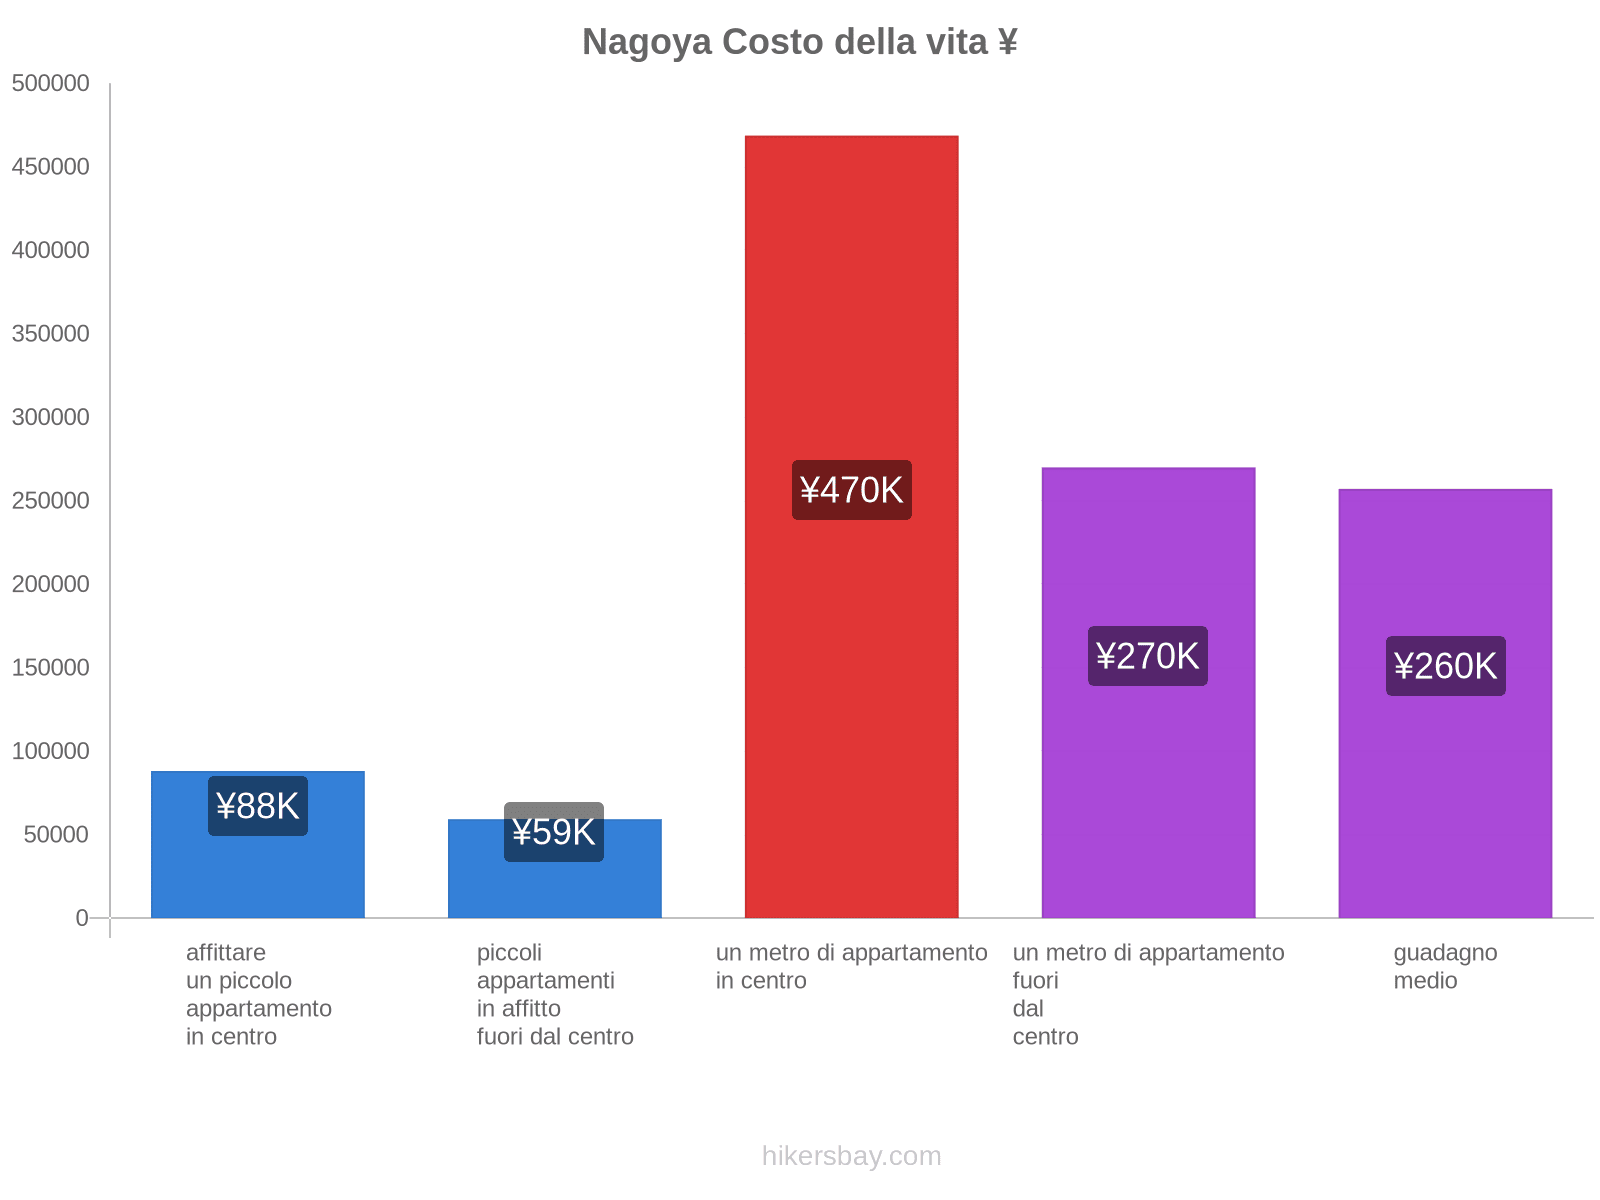 Nagoya costo della vita hikersbay.com